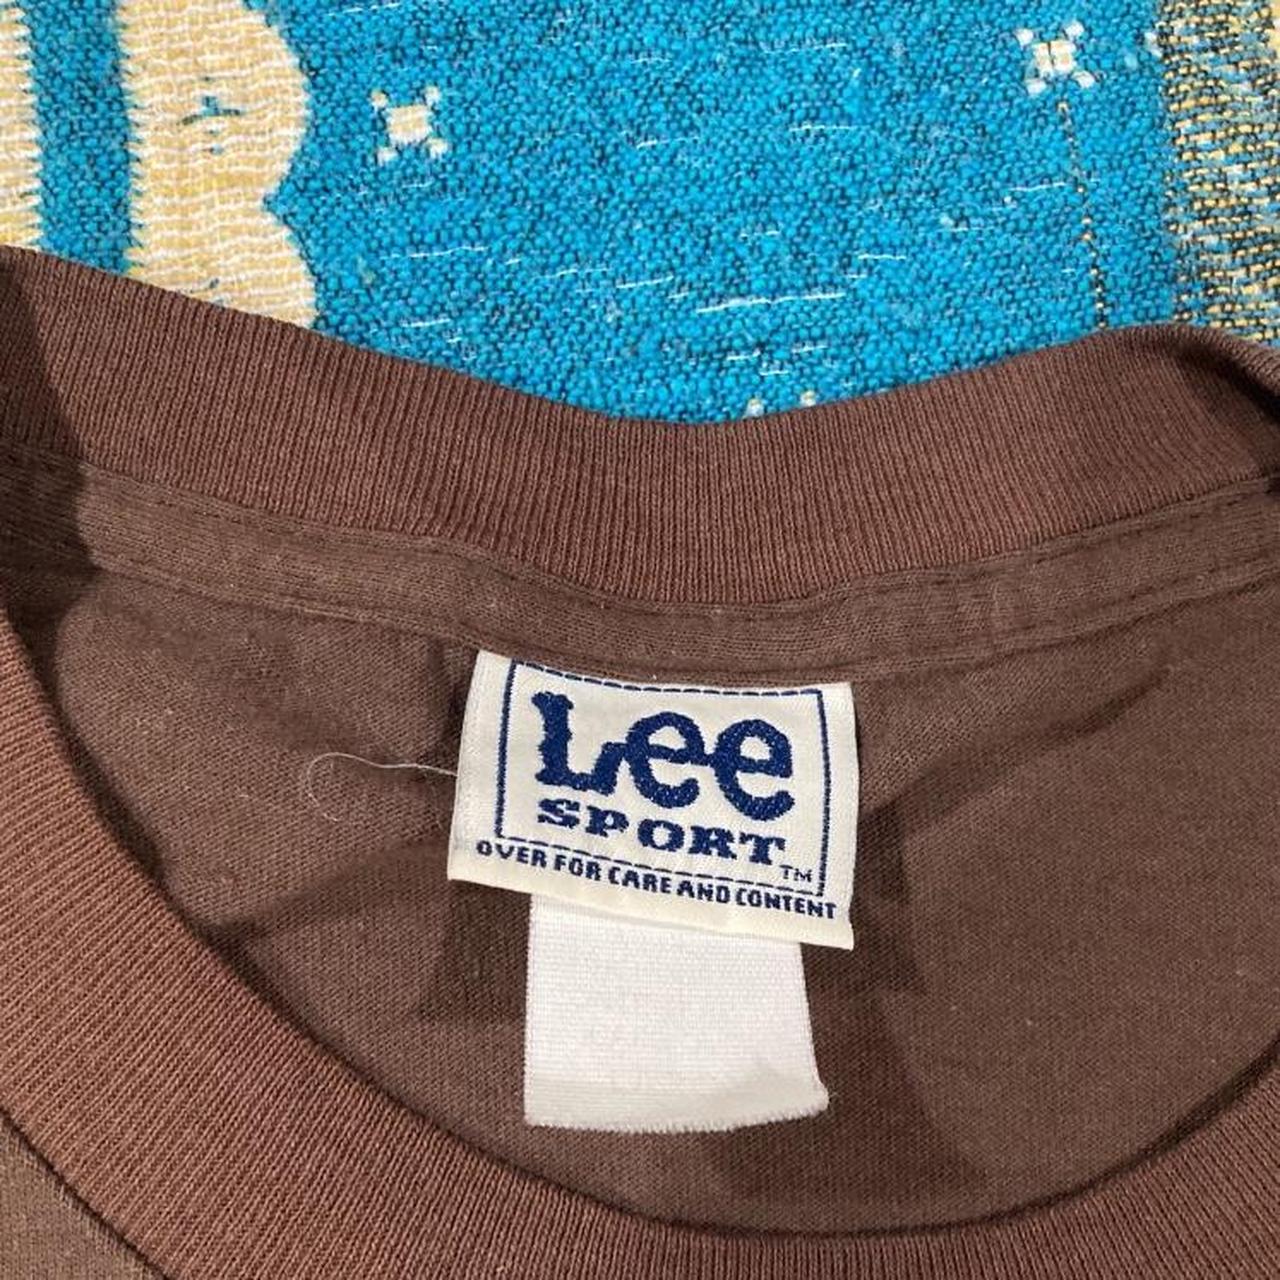 Lee sport Dodgers shirt - Depop